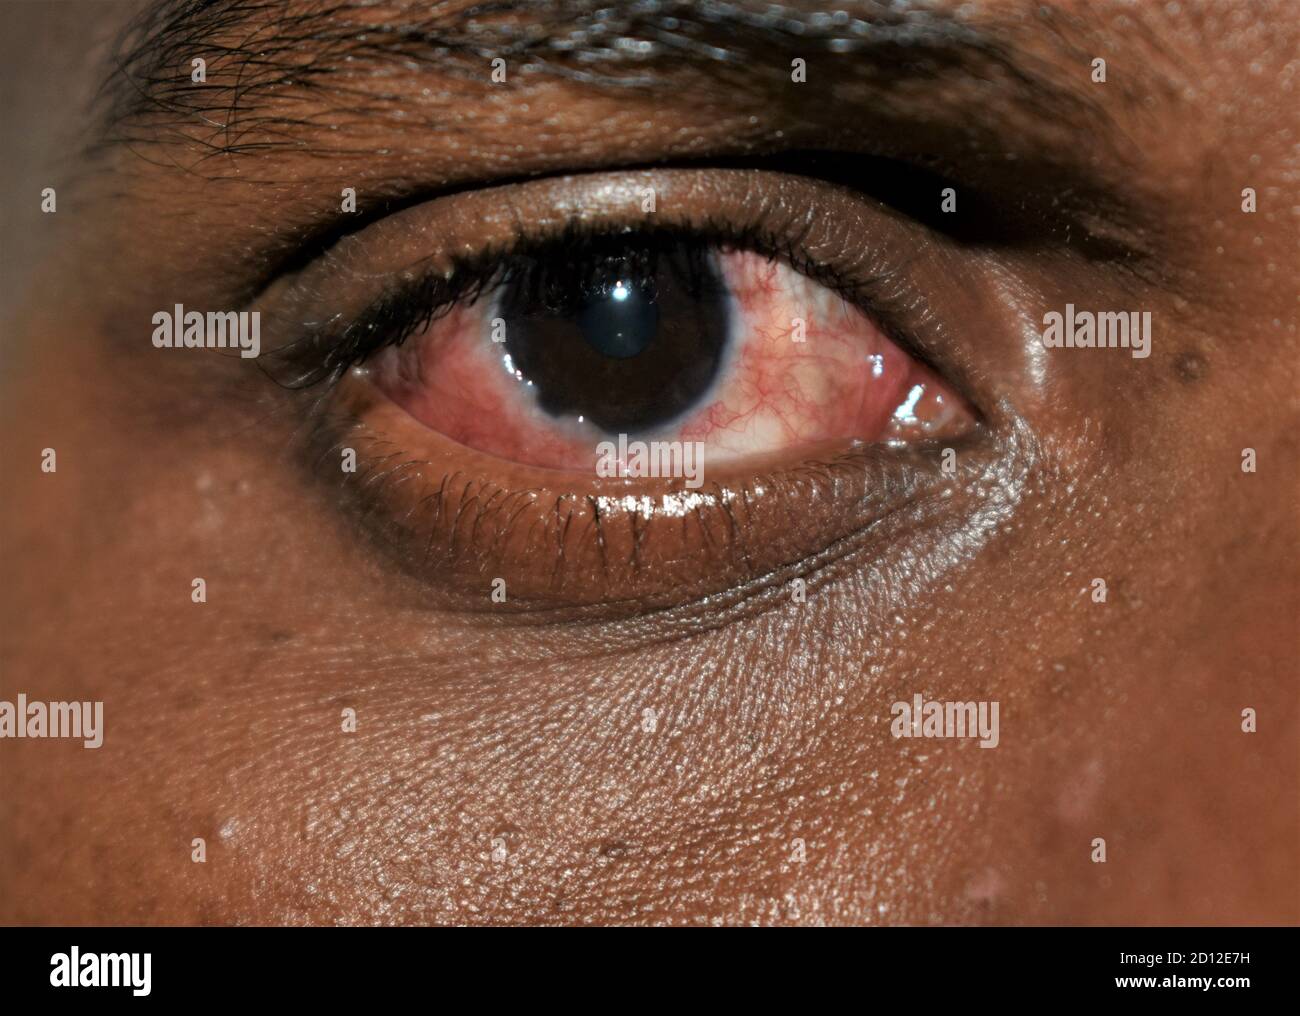 Rote Augen. Indianer. Nahaufnahme von verärgerten roten Augen des Mannes,  der von Konjunktivitis oder nach Grippe, Erkältung oder Allergie betroffen  ist. Krankheit und Behandlung Stockfotografie - Alamy